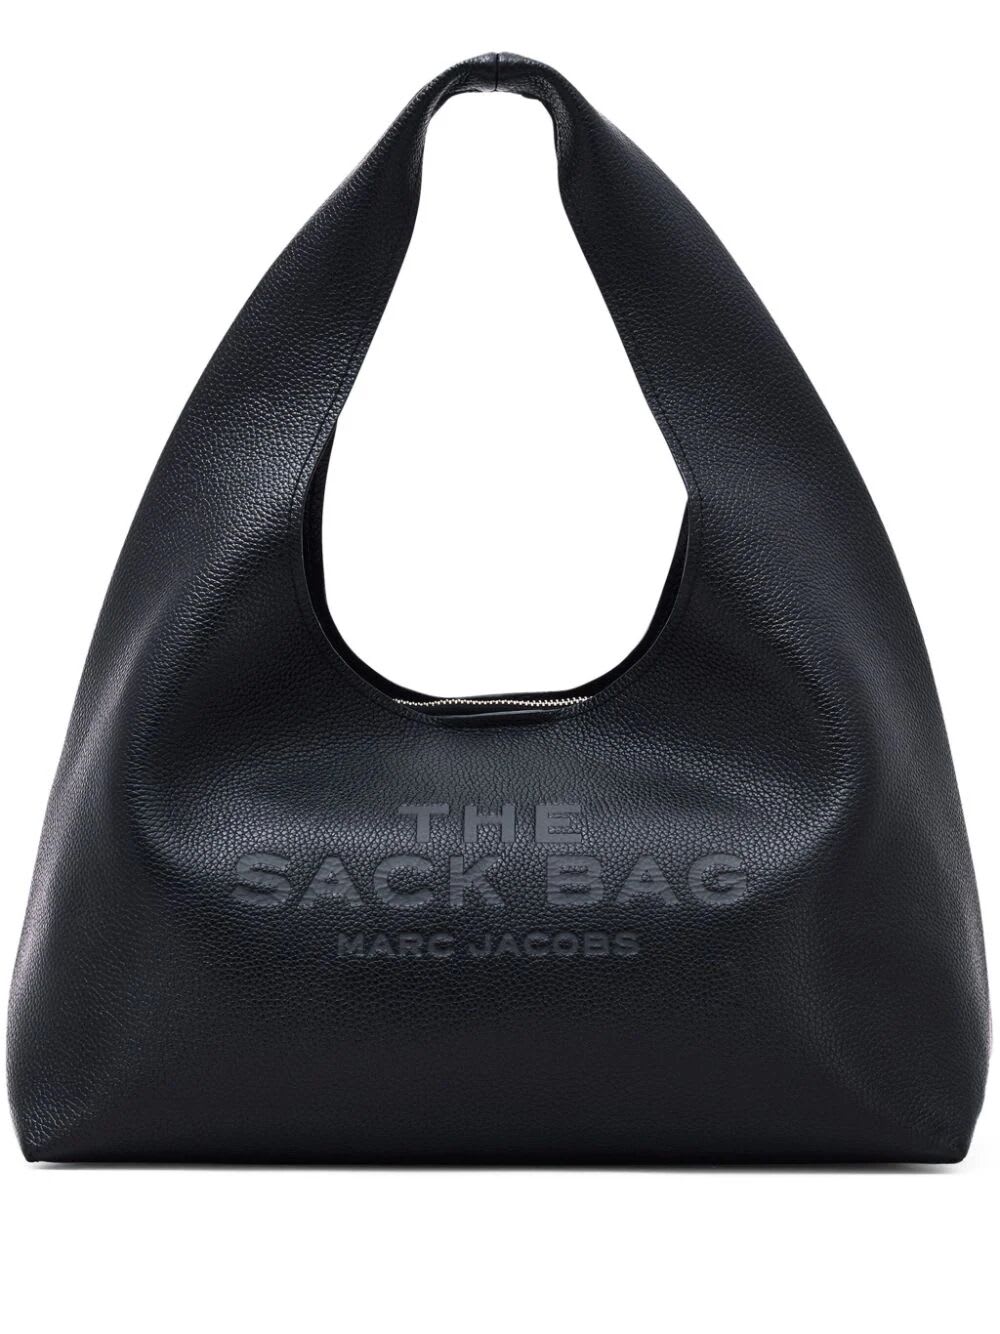 Marc Jacobs The Sack Leather Shoulder Bag In Black